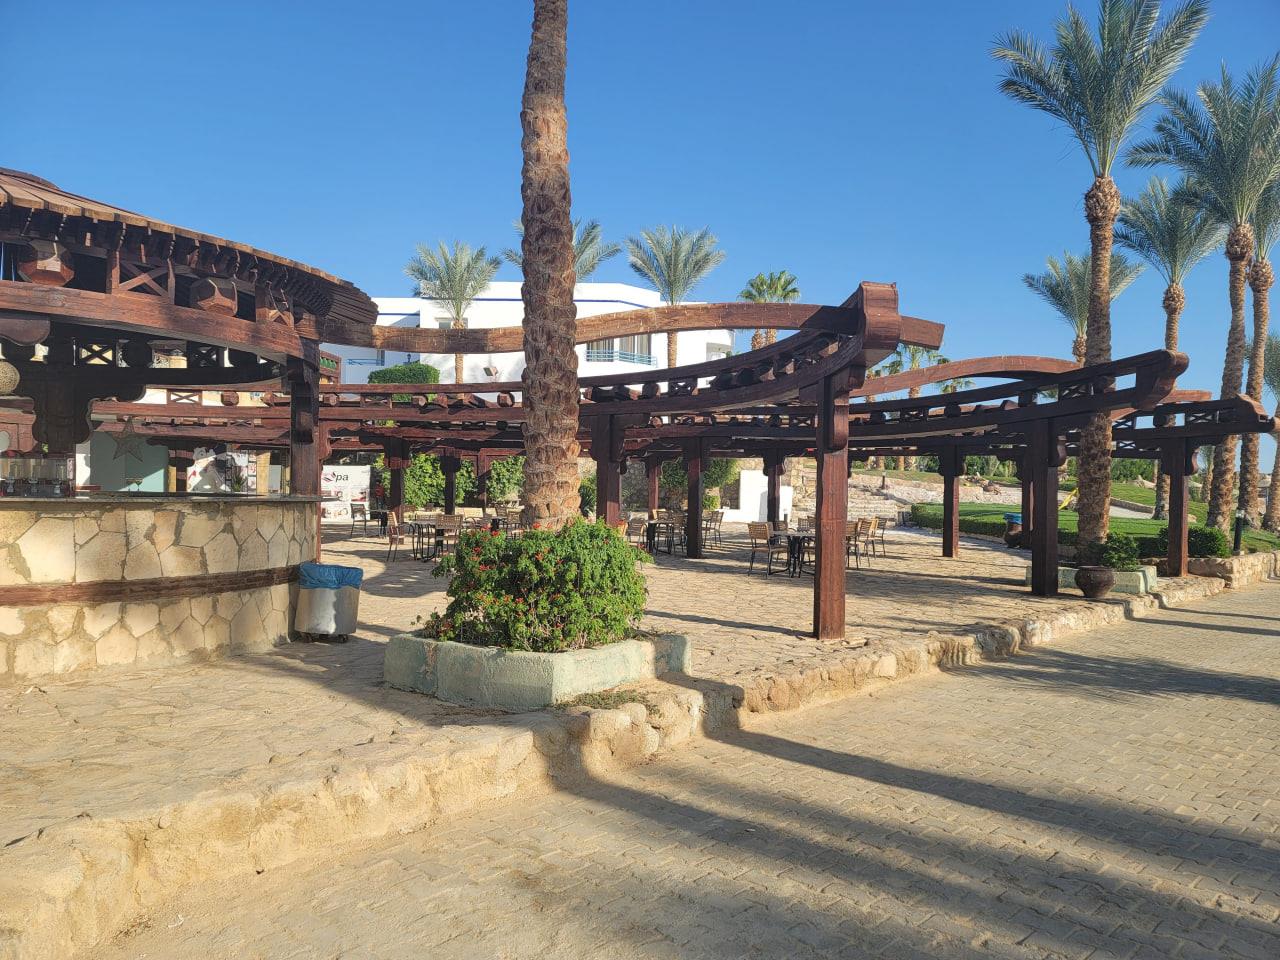 Queen Sharm Resort 4*